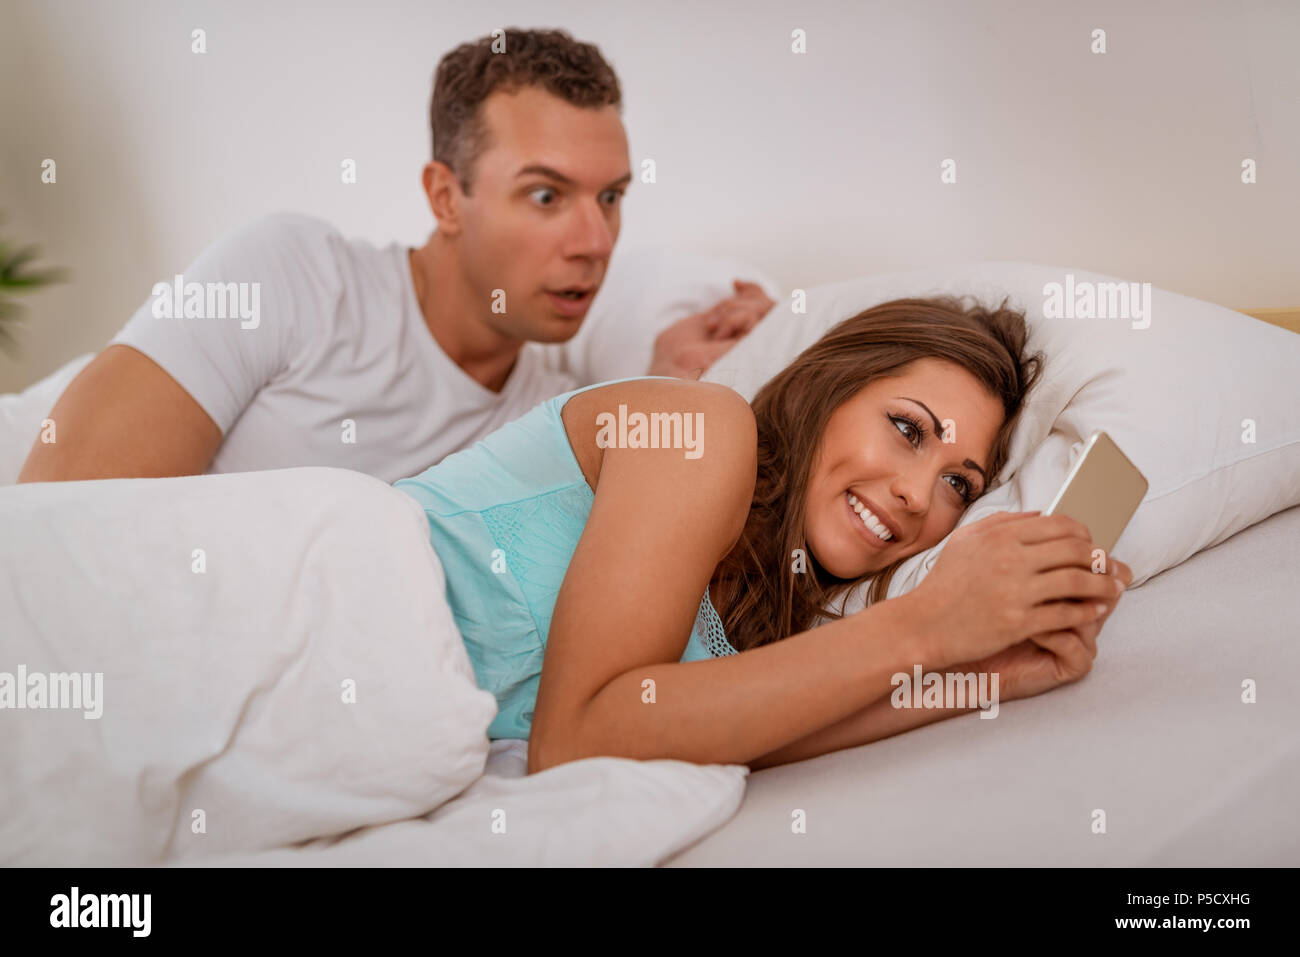 Esposa engañando a su marido a través de teléfono móvil en la cama, el marido se engancha a ella Fotografía de stock